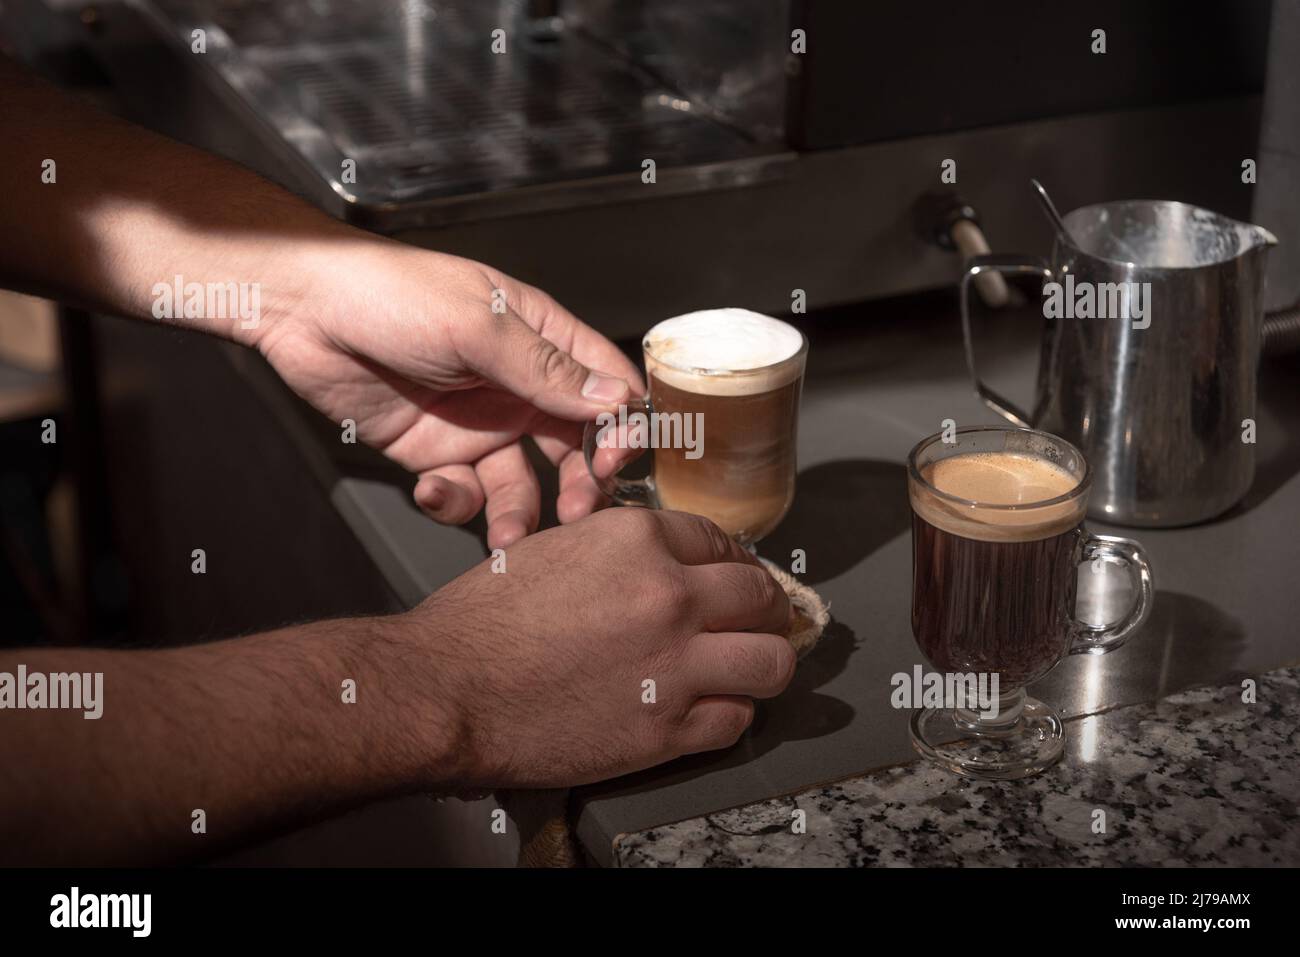 Préparation de deux cafés sur un comptoir de bar. Mains d'homme. Horizontale. Couleur. Banque D'Images